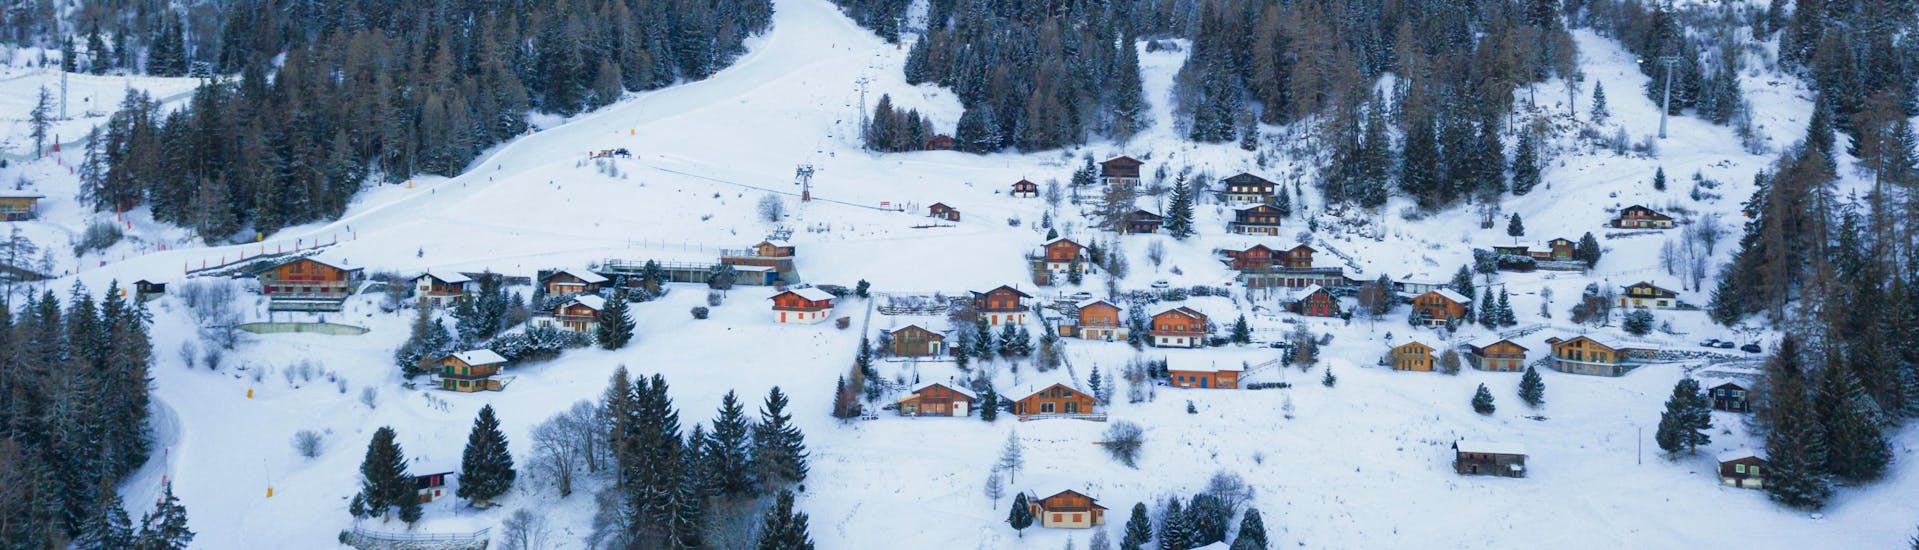 Eine Luftaufnahme der Skipisten von La Tzoumaz, einem beliebten schweizer Skigebiet in dem Besucher bei einer der örtlichen Skischulen einen Skikurs buchen können.